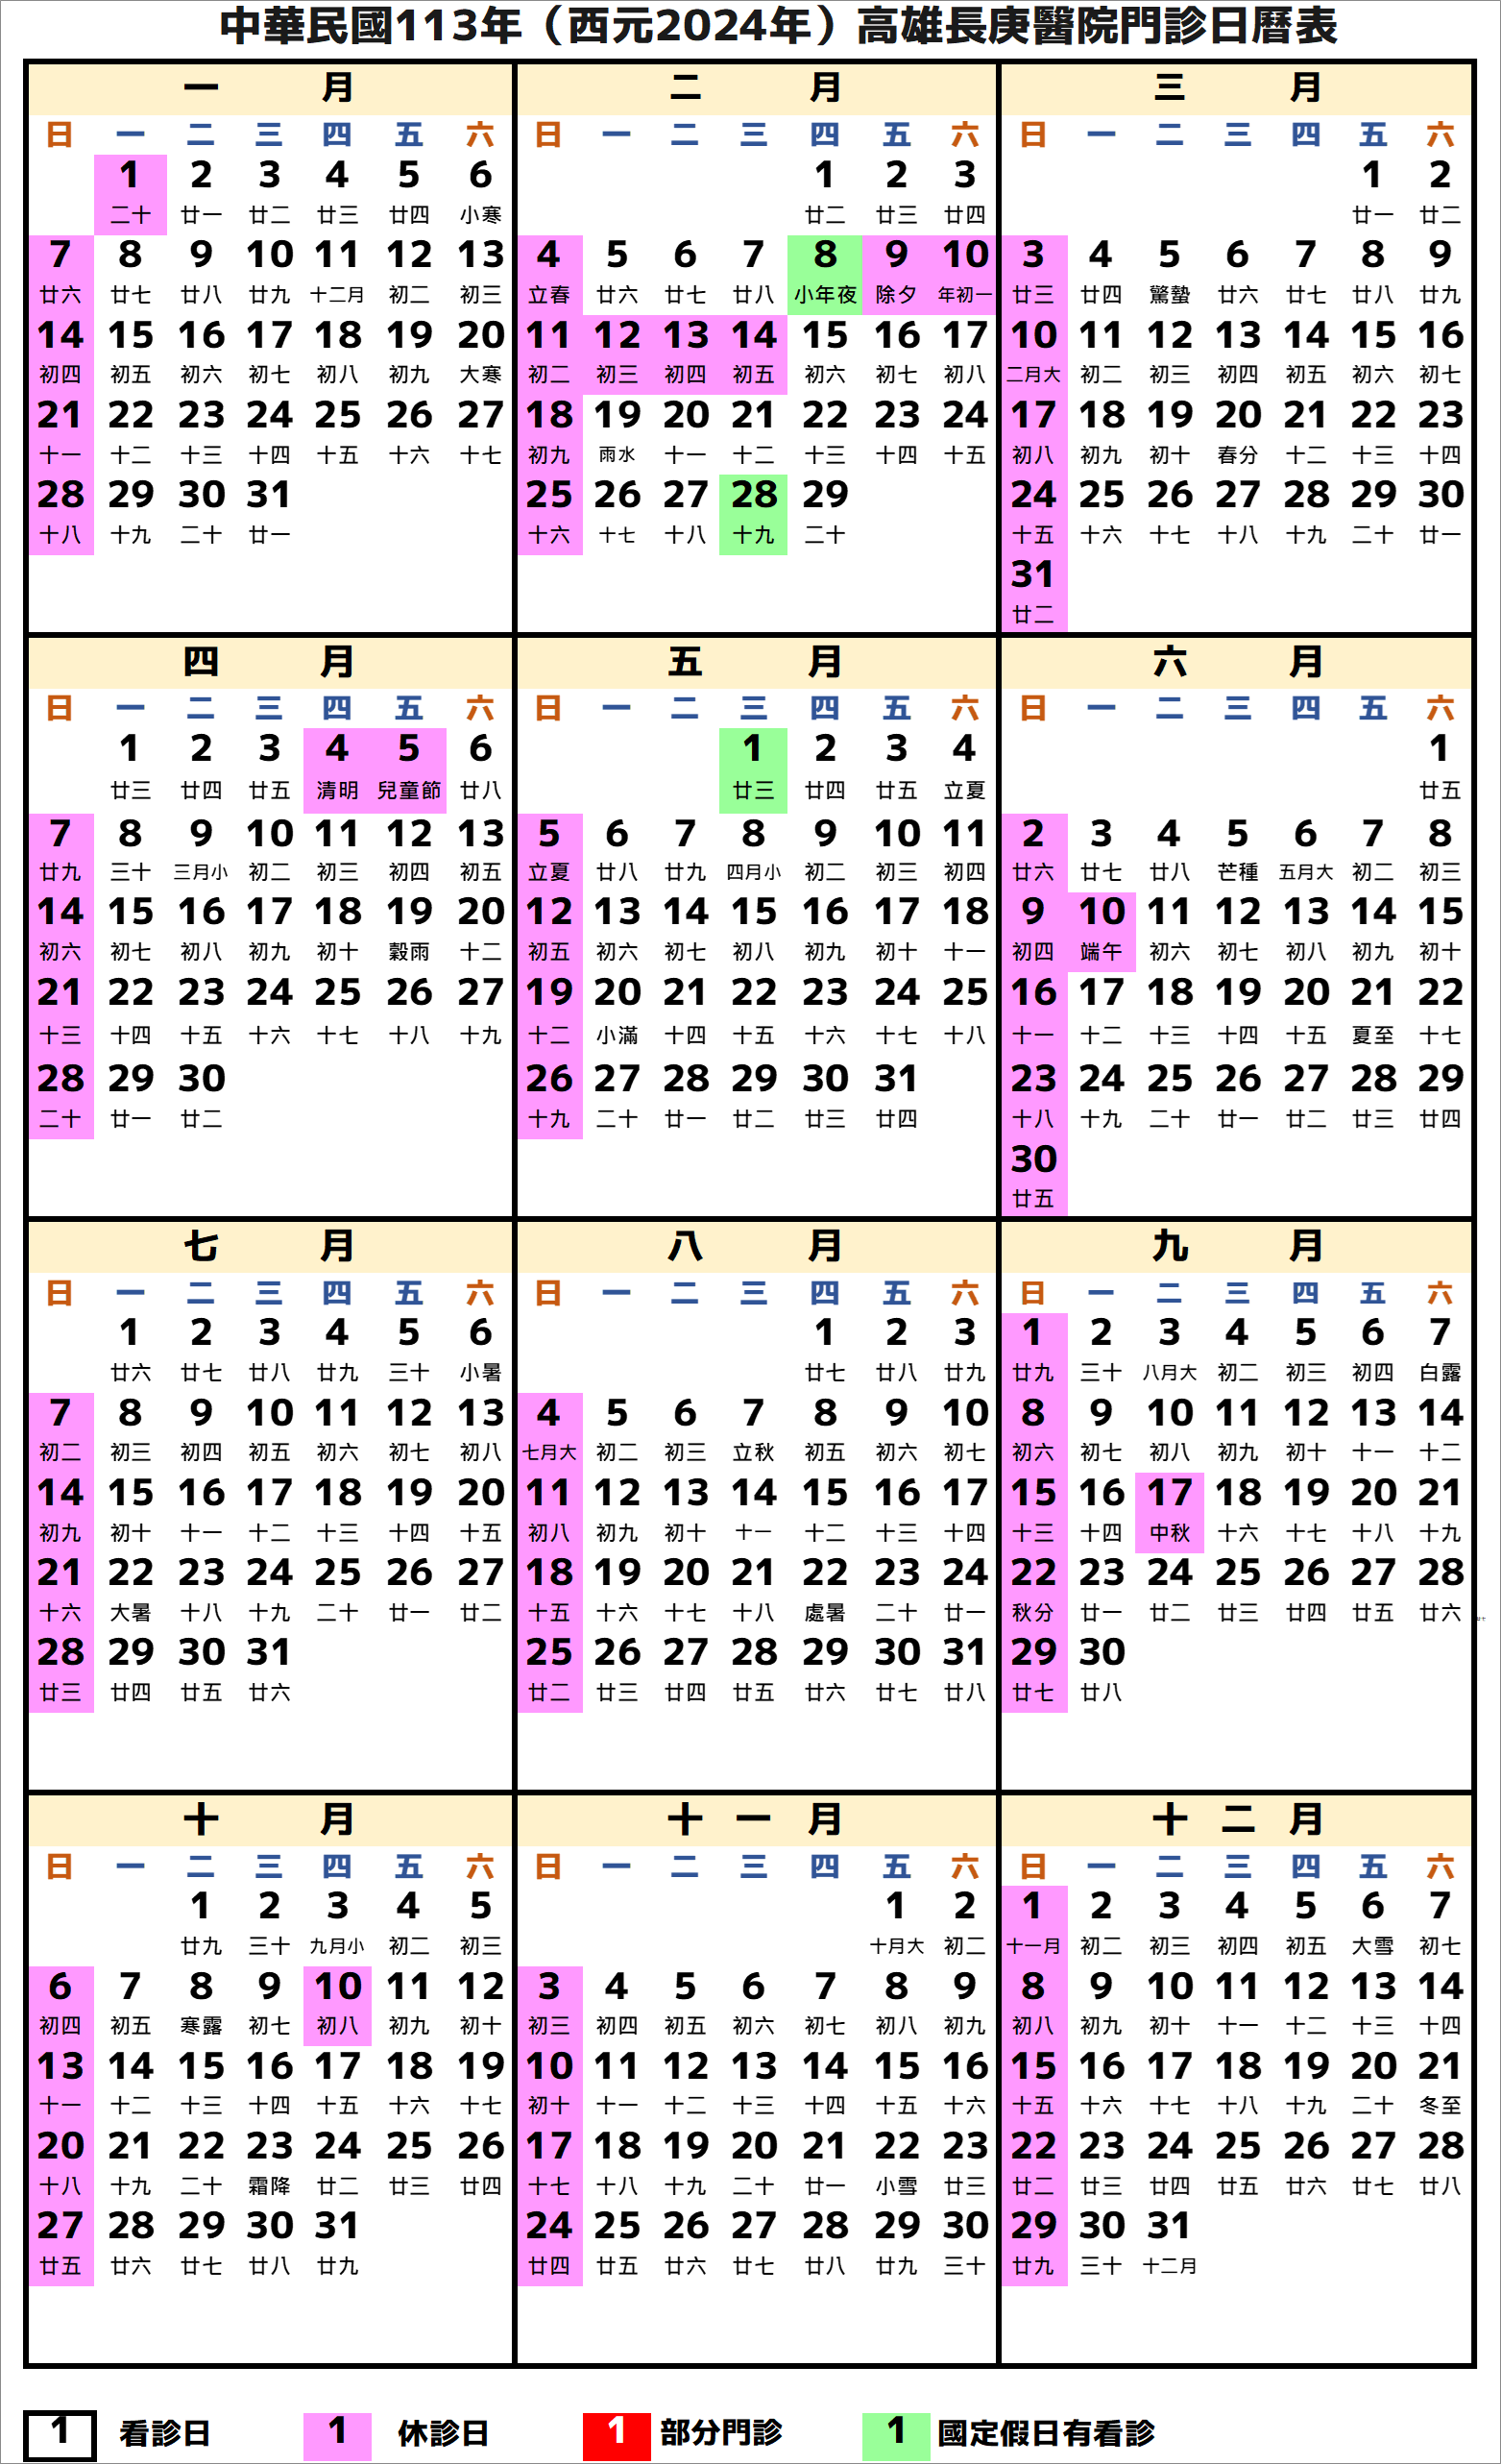 高雄長庚醫院行事曆2024年-民國113年